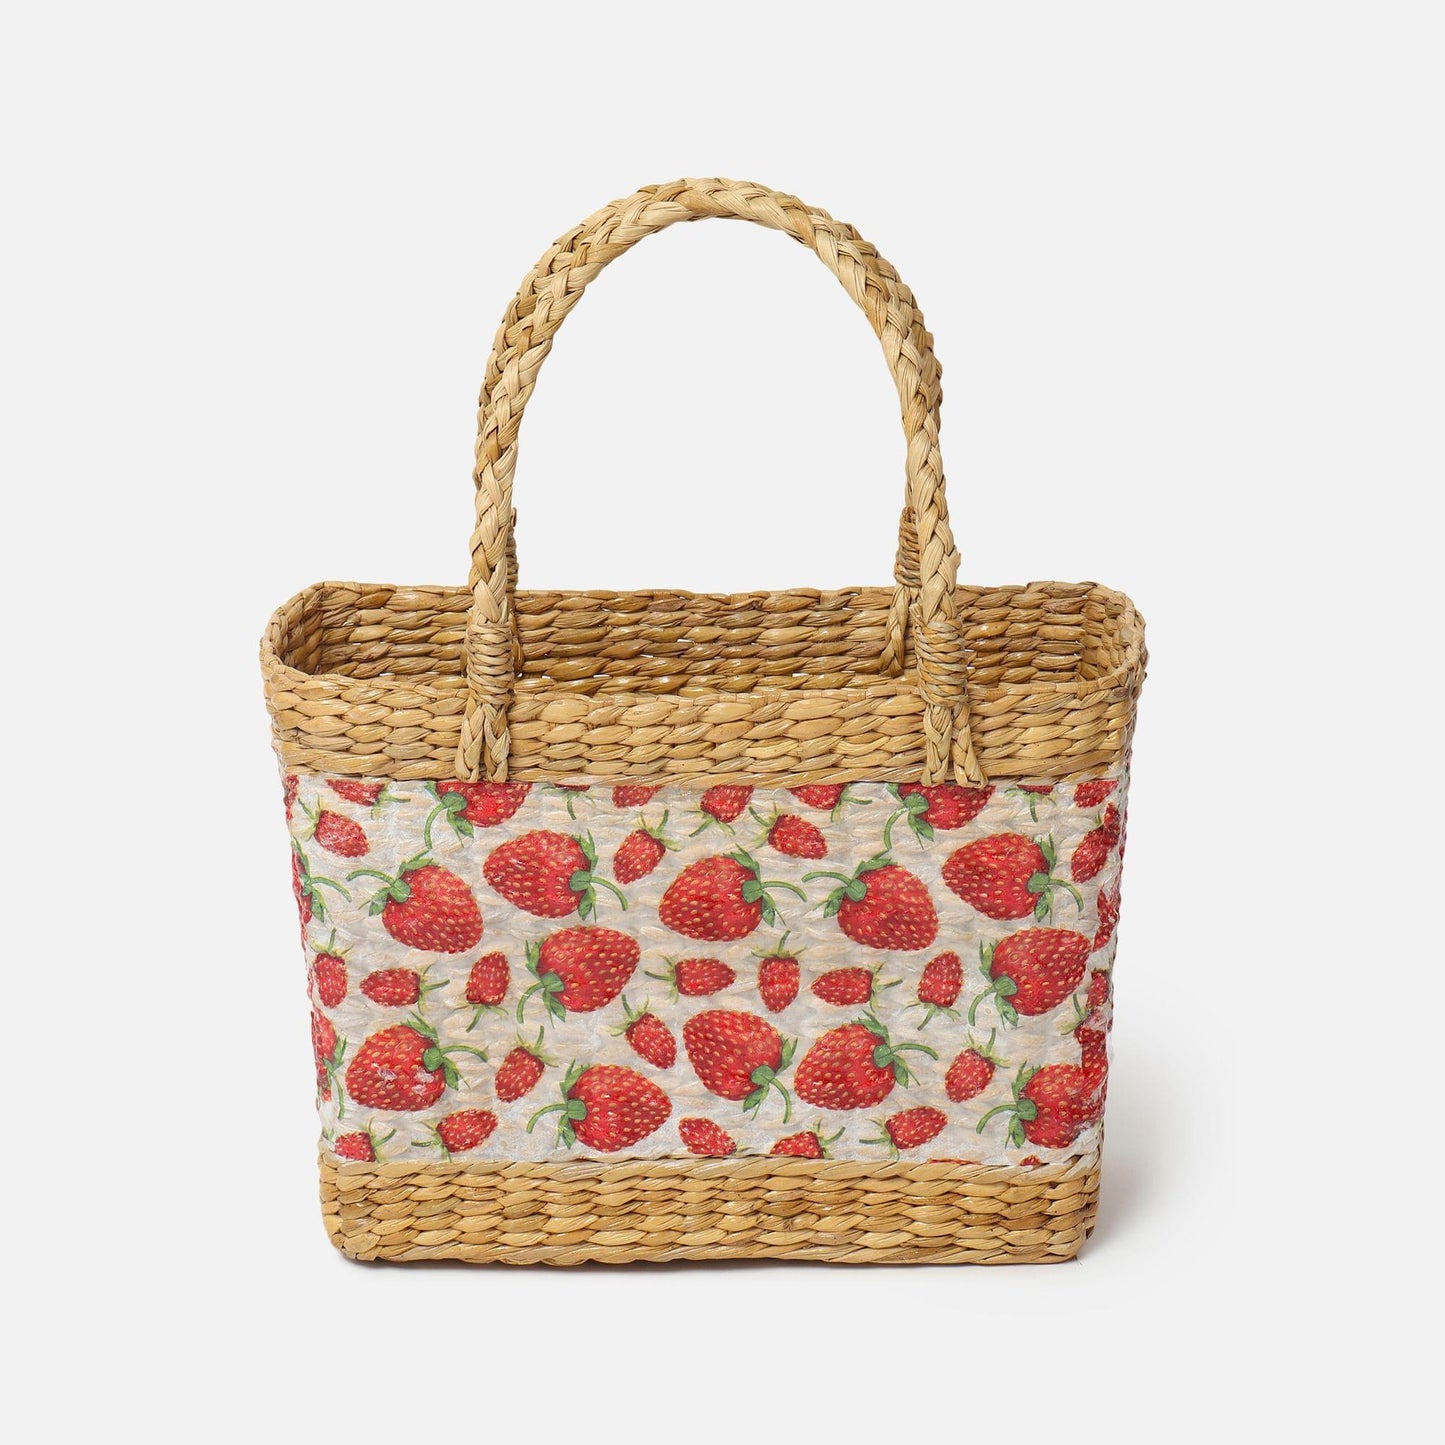 Buy Shopping Basket